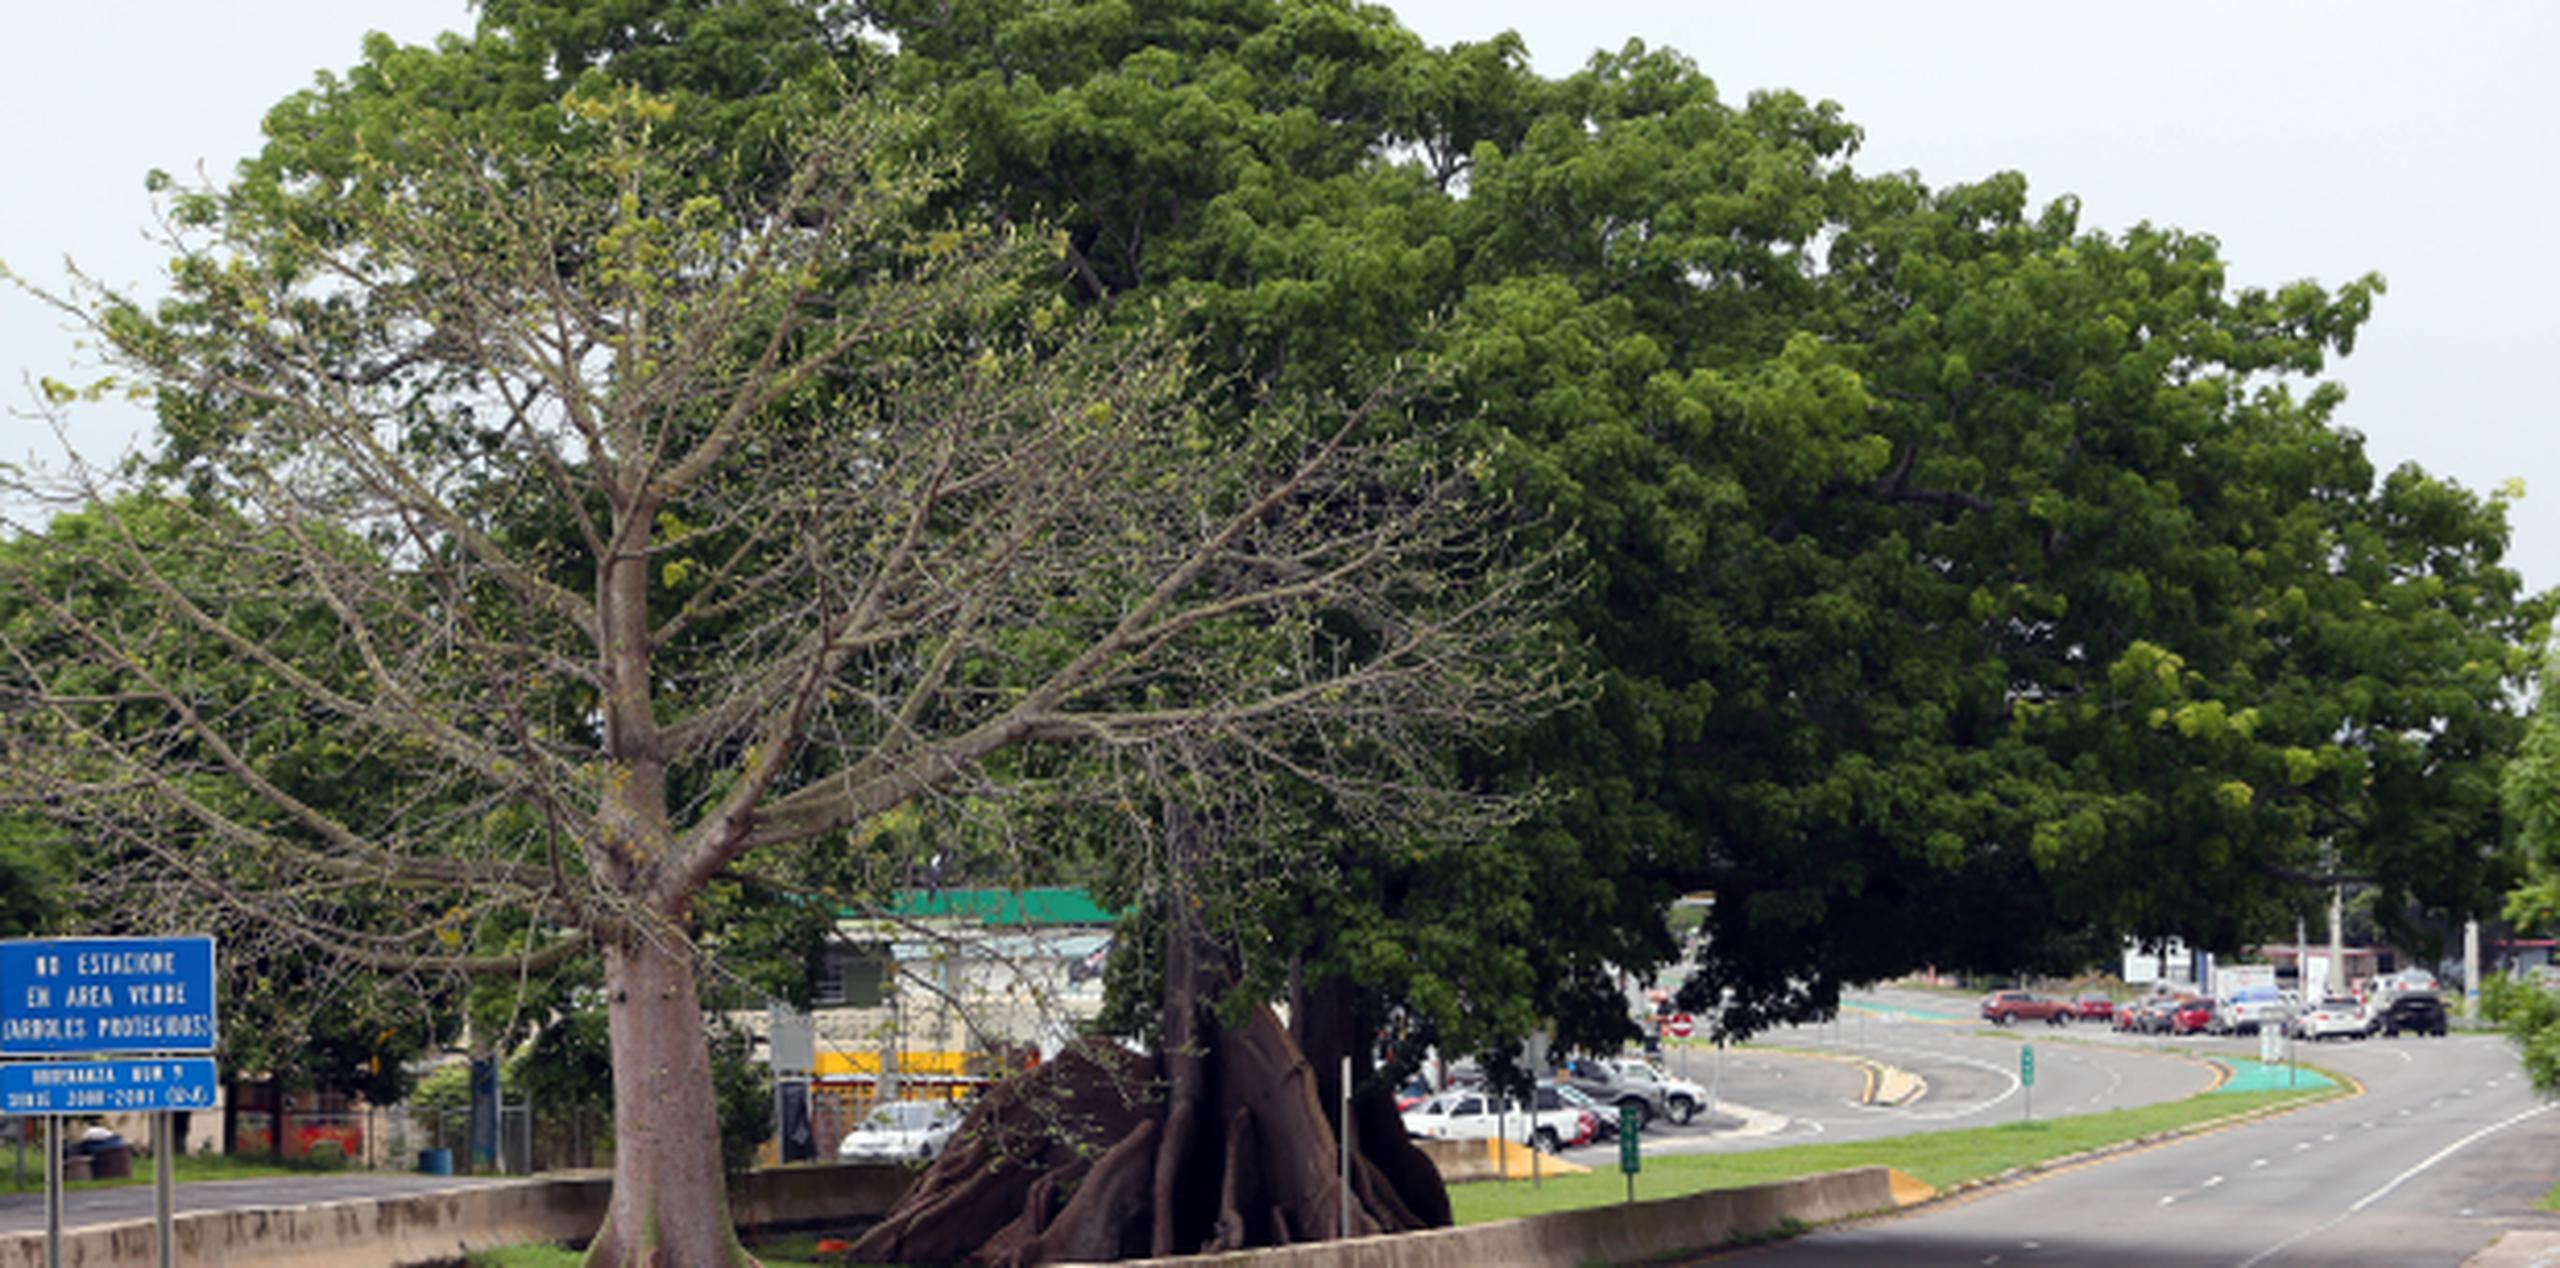 La ceiba (Ceiba pentandra) es un árbol nativo de Puerto Rico que también se encuentra en todas las zonas tropicales alrededor del planeta.